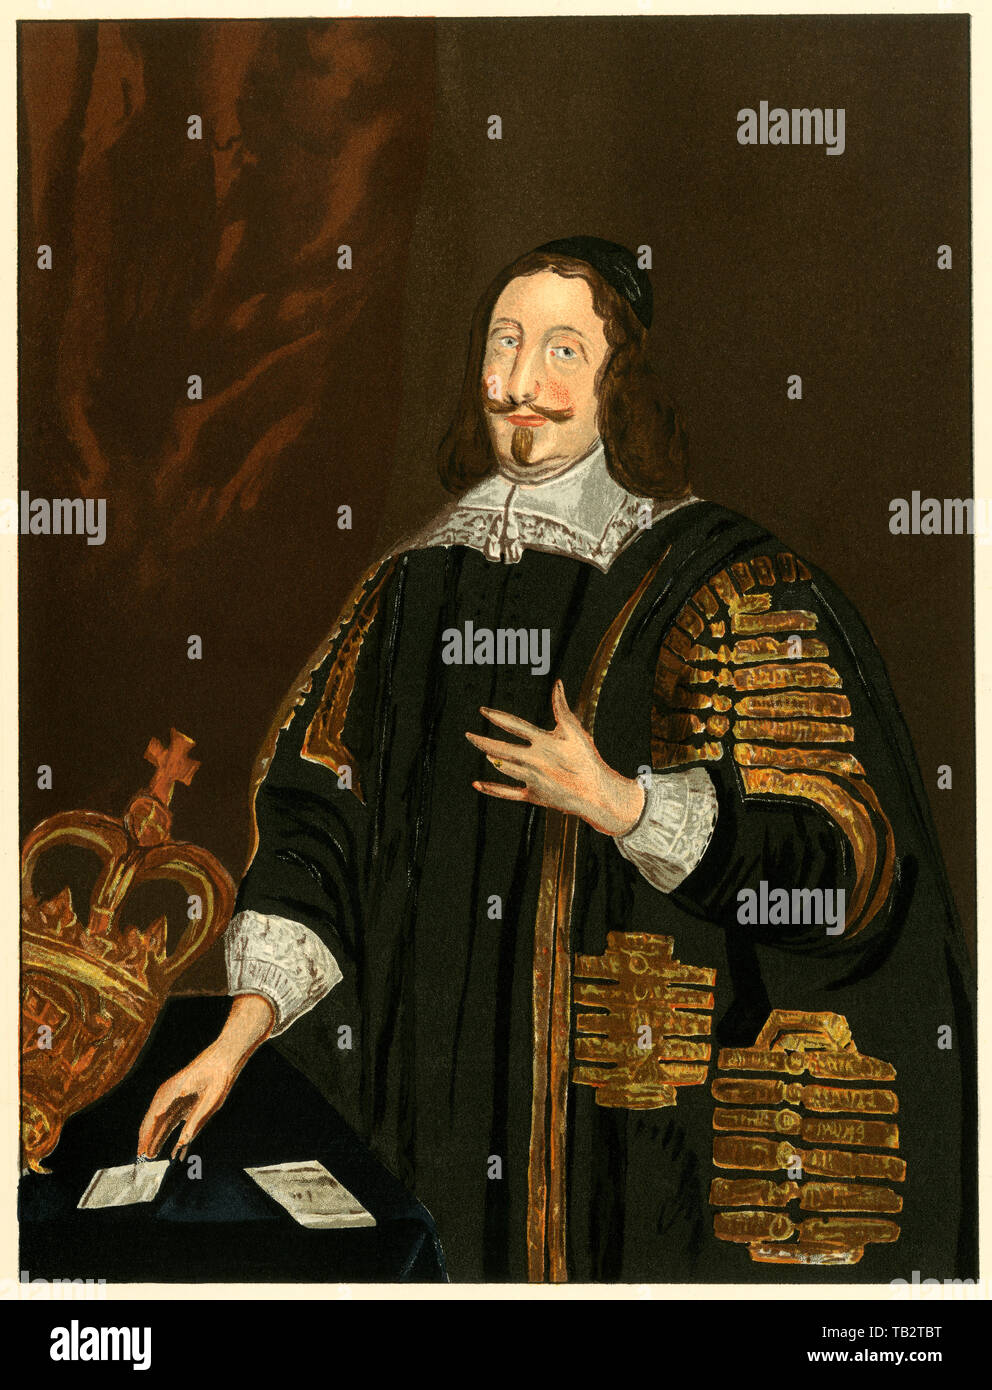 William Lenthall, altoparlante della House of Commons, 1600s. Litografia a colori da una copia da Thomas Athow nella biblioteca Bodleian Library Foto Stock